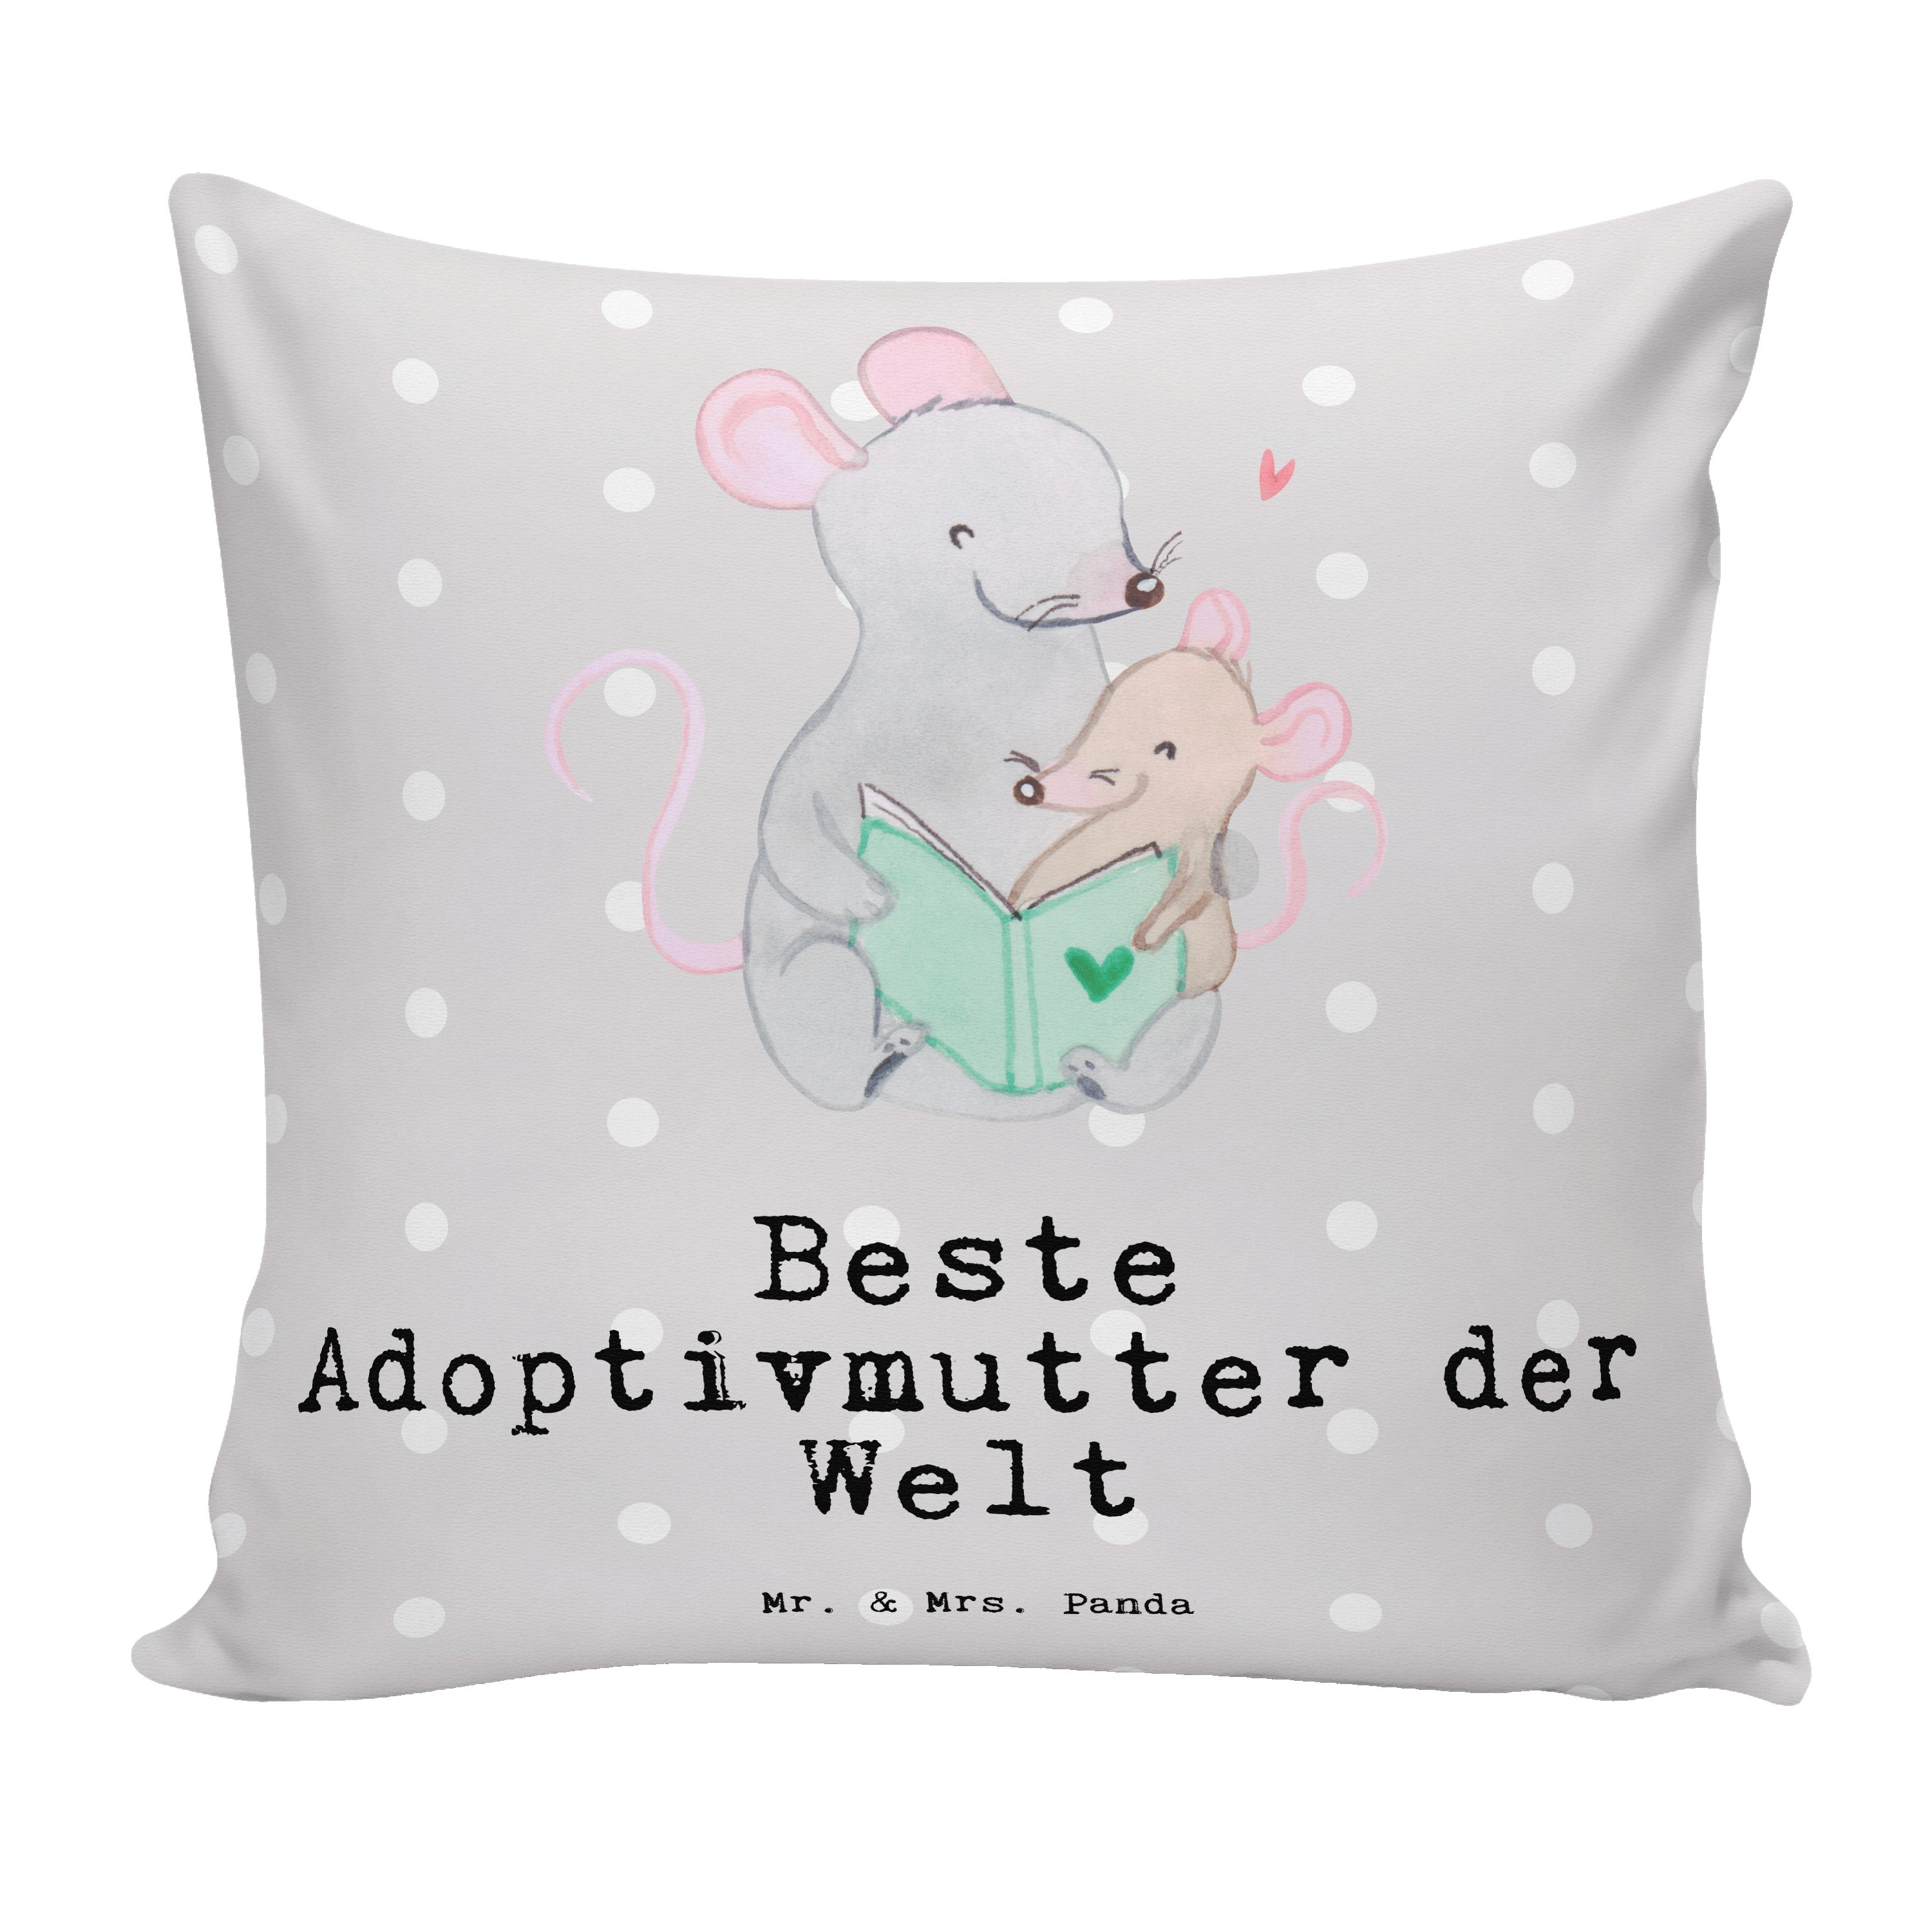 Mr. & Mrs. Panda Dekokissen Maus Beste Adoptivmutter der Welt - Grau Pastell - Geschenk, Danke, S